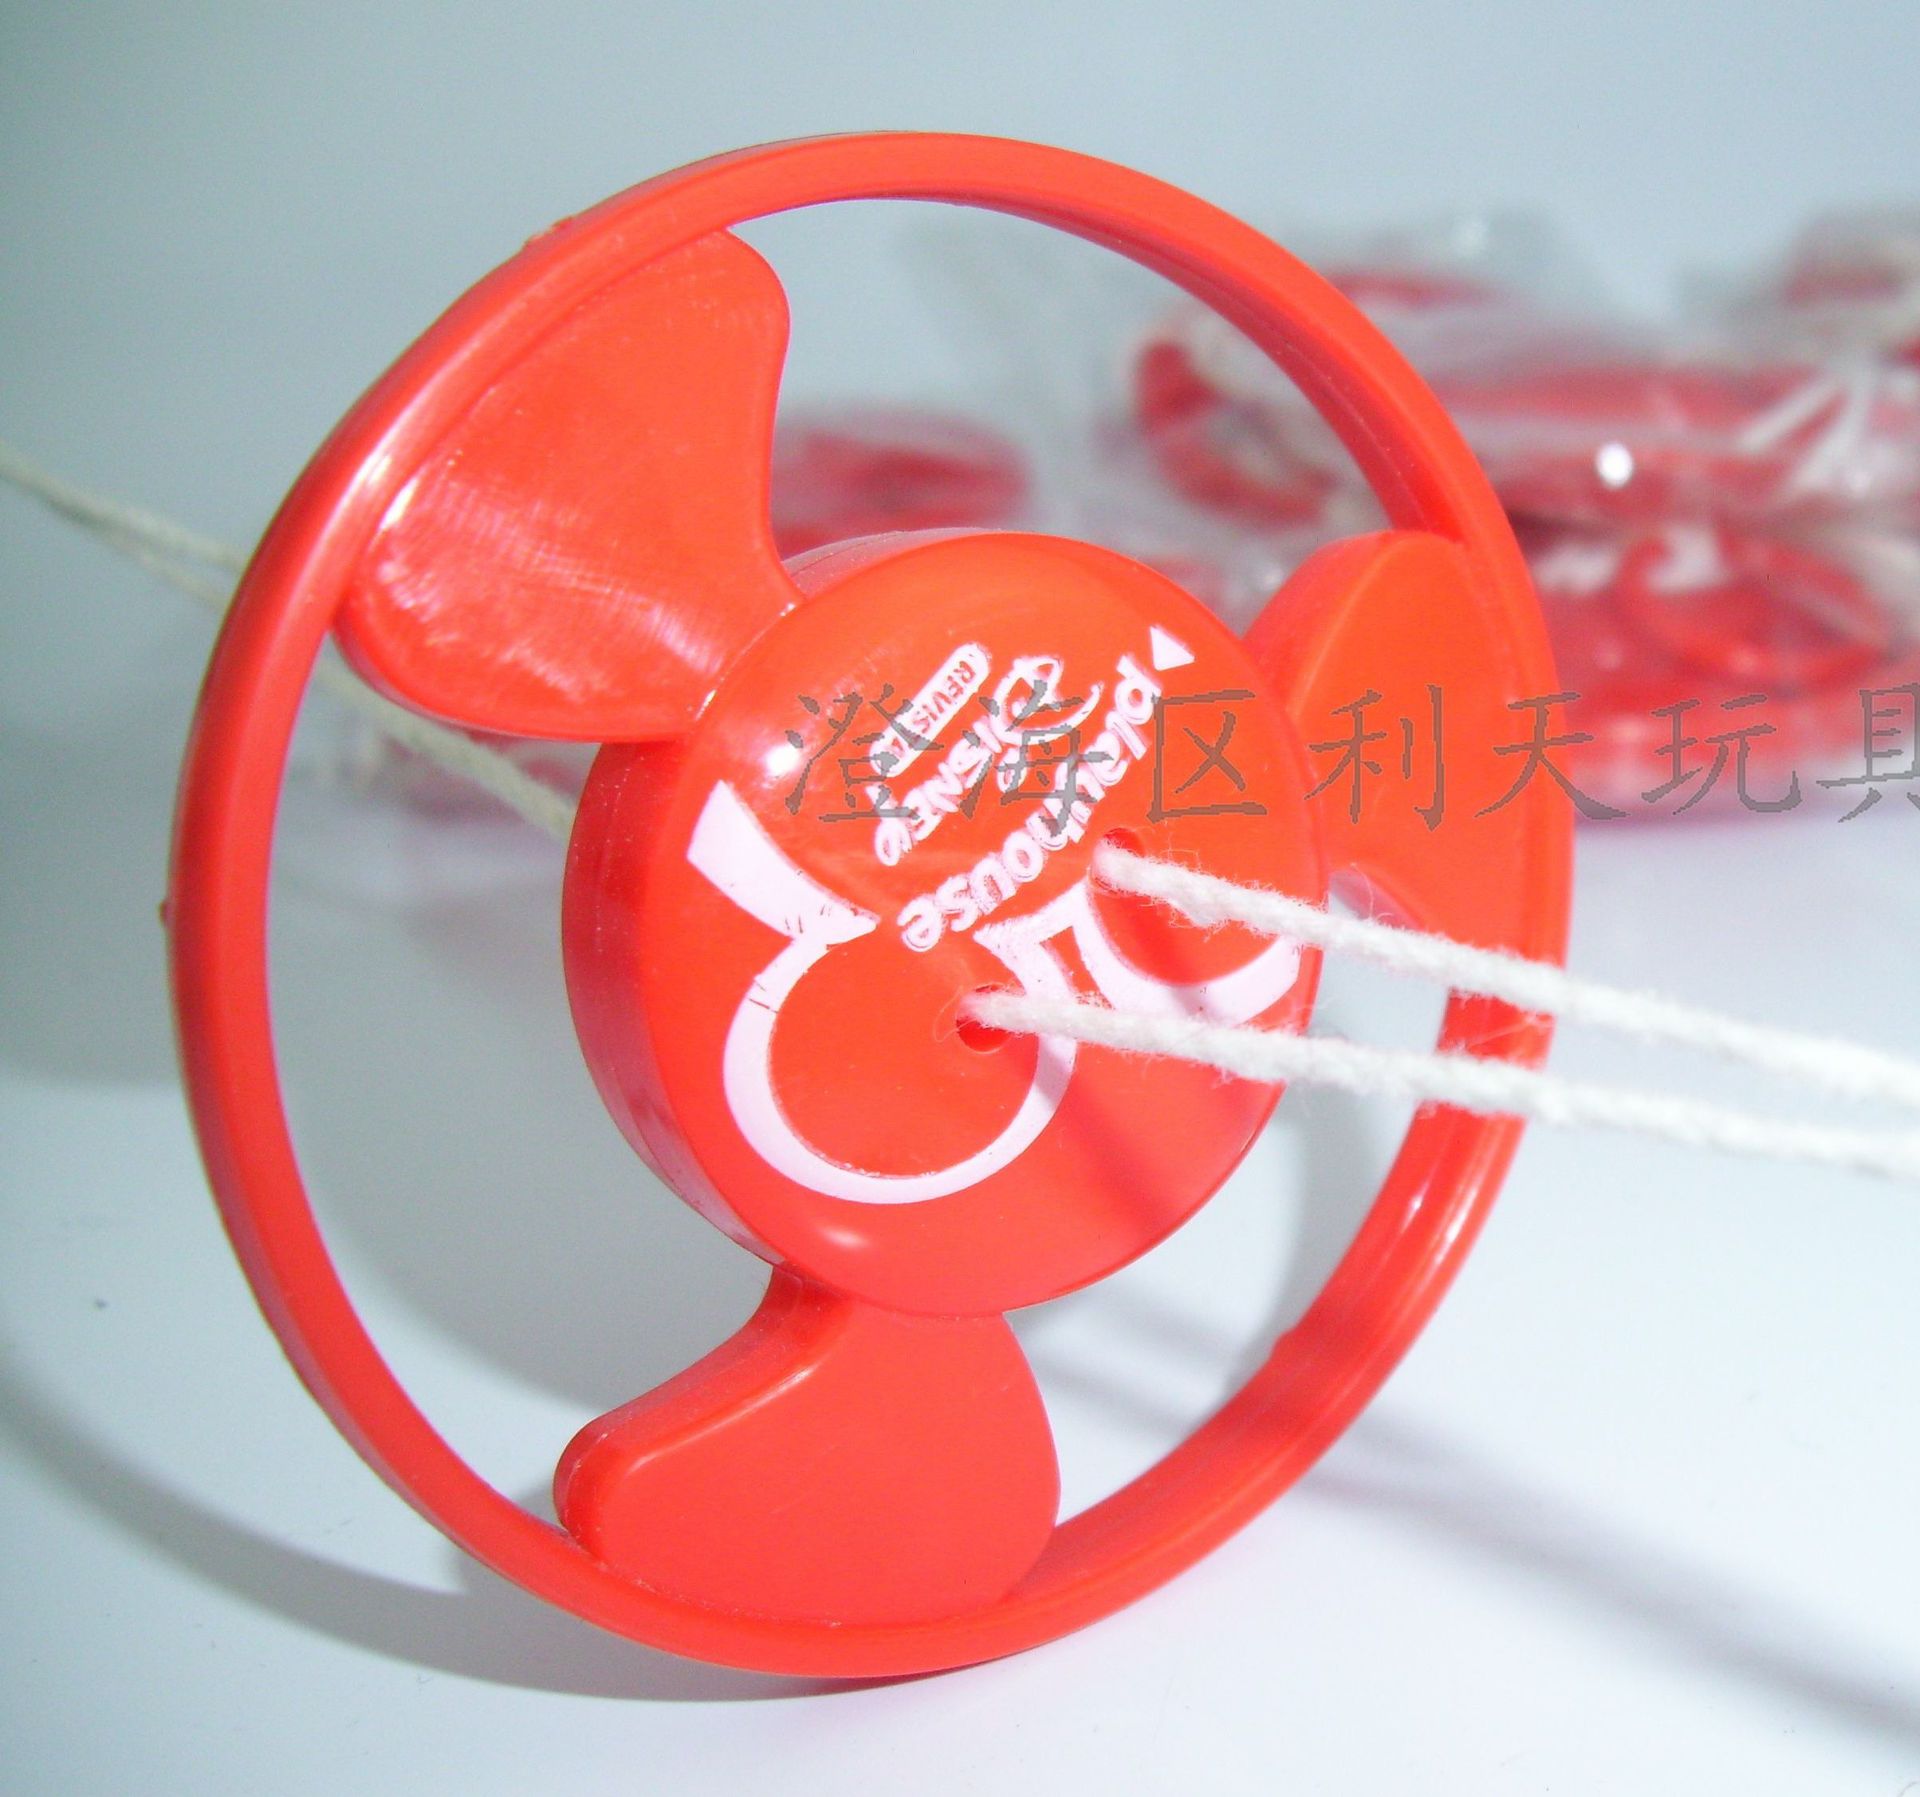 厂家手拉带灯发光闪光飞轮惯性飞转玩具赠品塑料飞碟玩具拉线飞轮